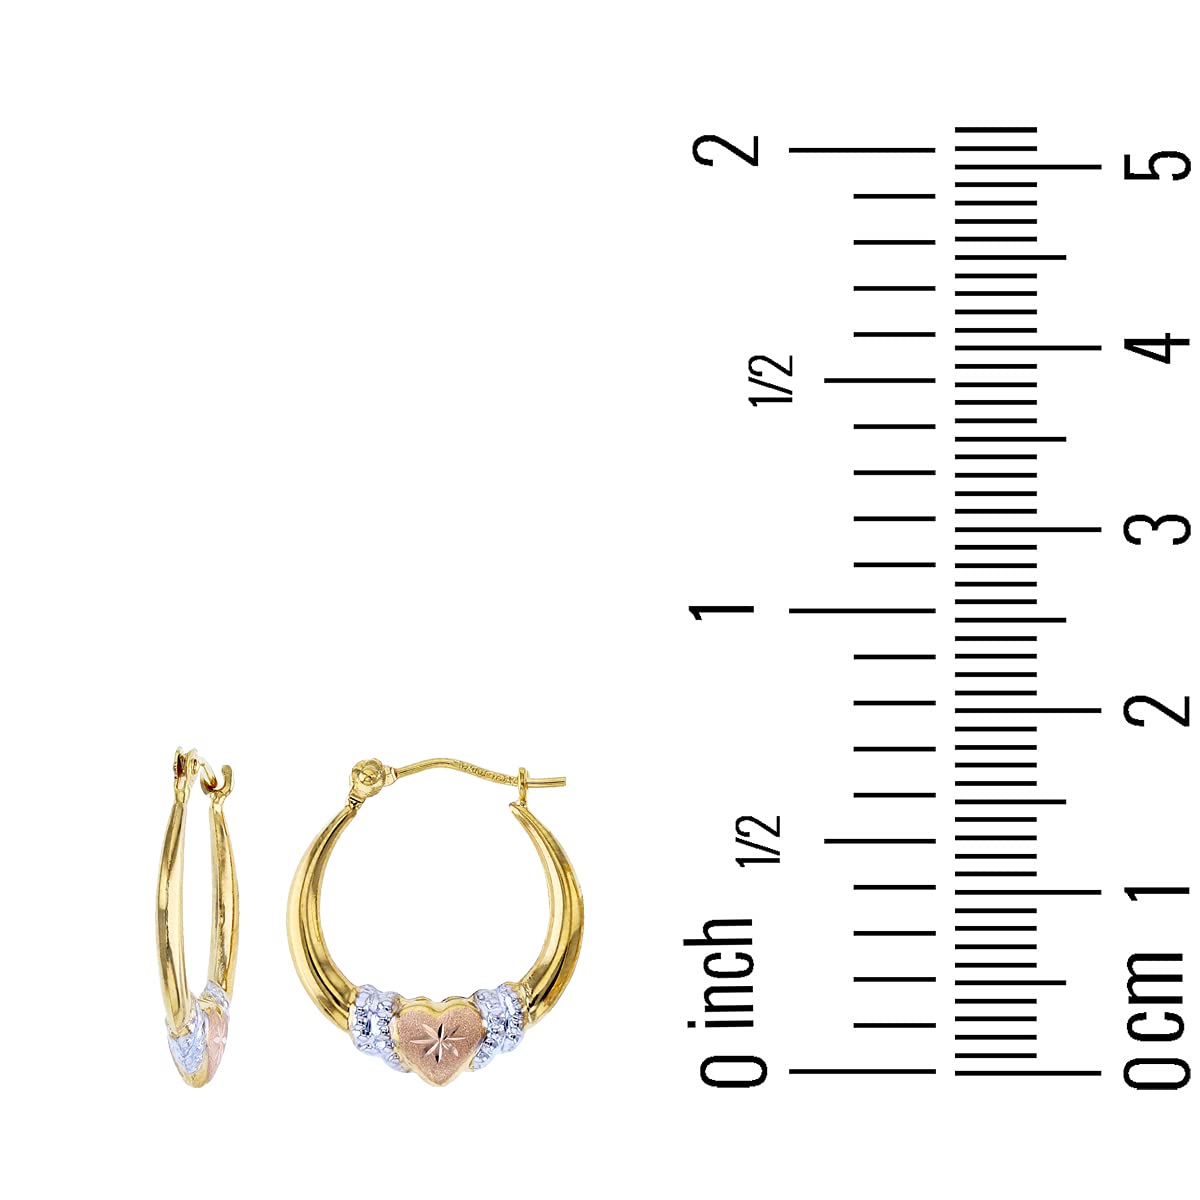 14K Gold Solid Hypoallergenic Heart Hoop Earrings - Tricolor Gold, Two Tone, Heart Shaped, Triple Heart, Shrimp Hoops